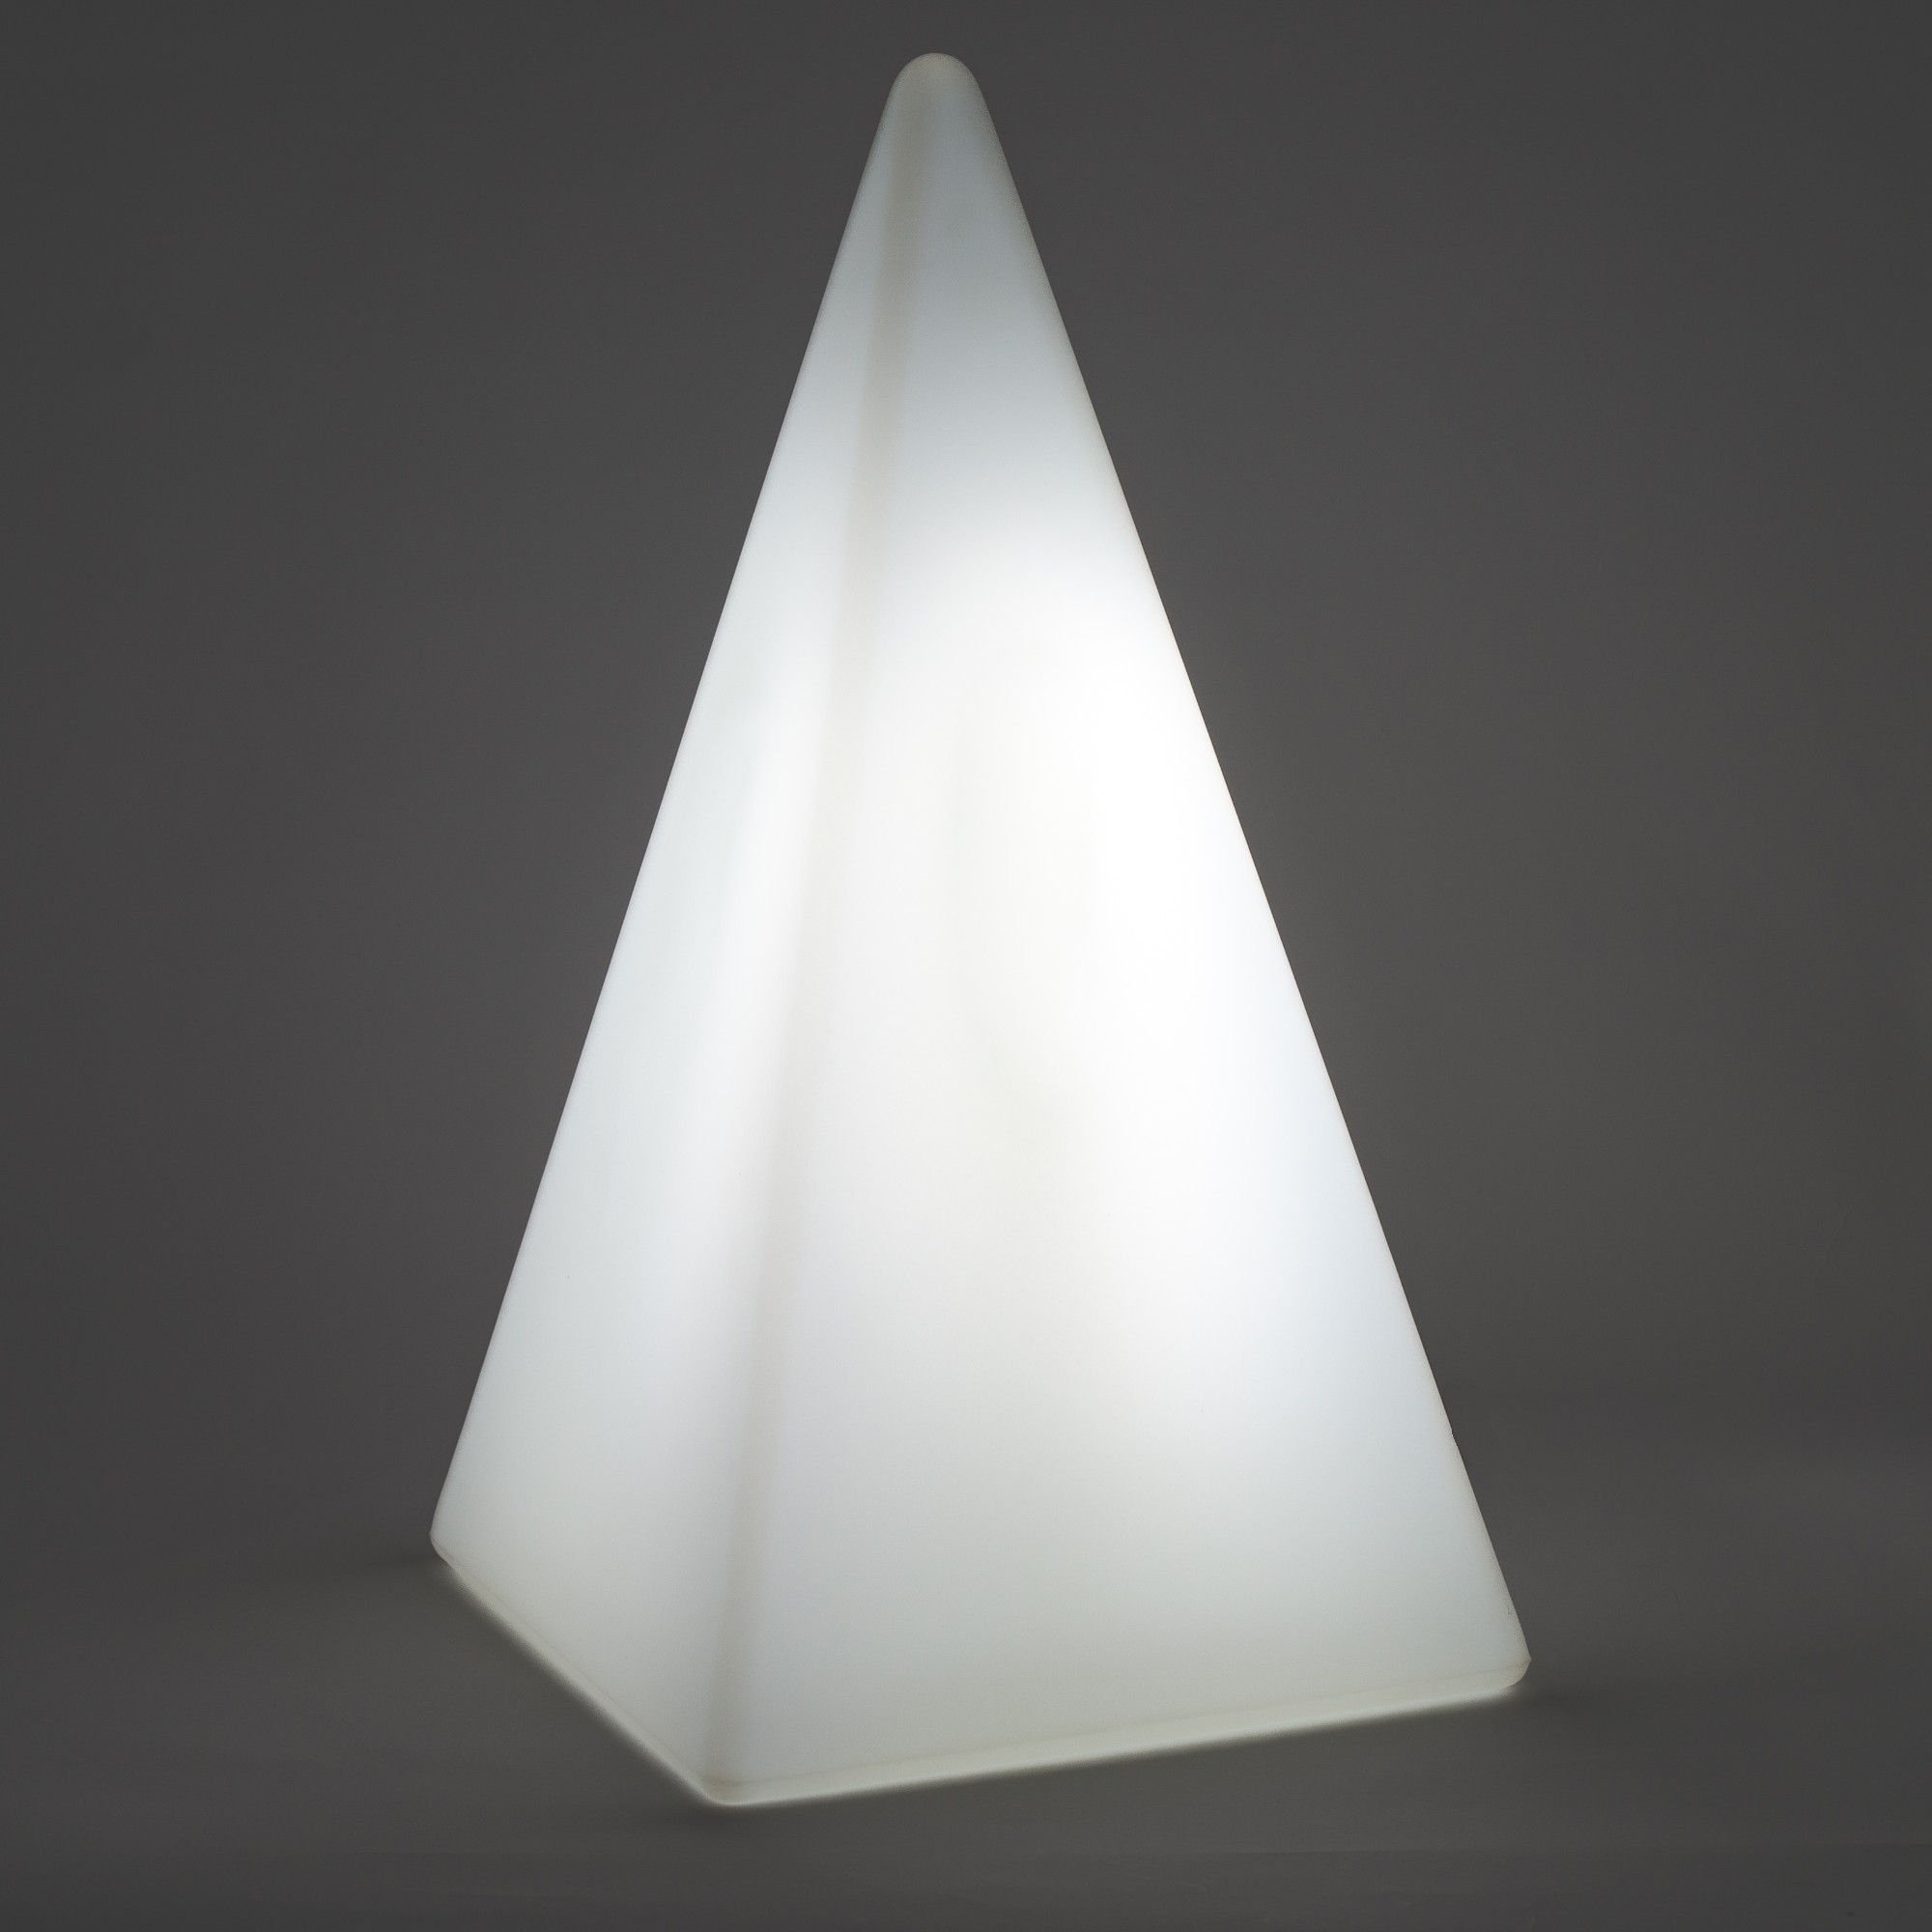 70305 Standleuchte Pyramide 73 cm der Firma EPSTEIN Design Leuchten